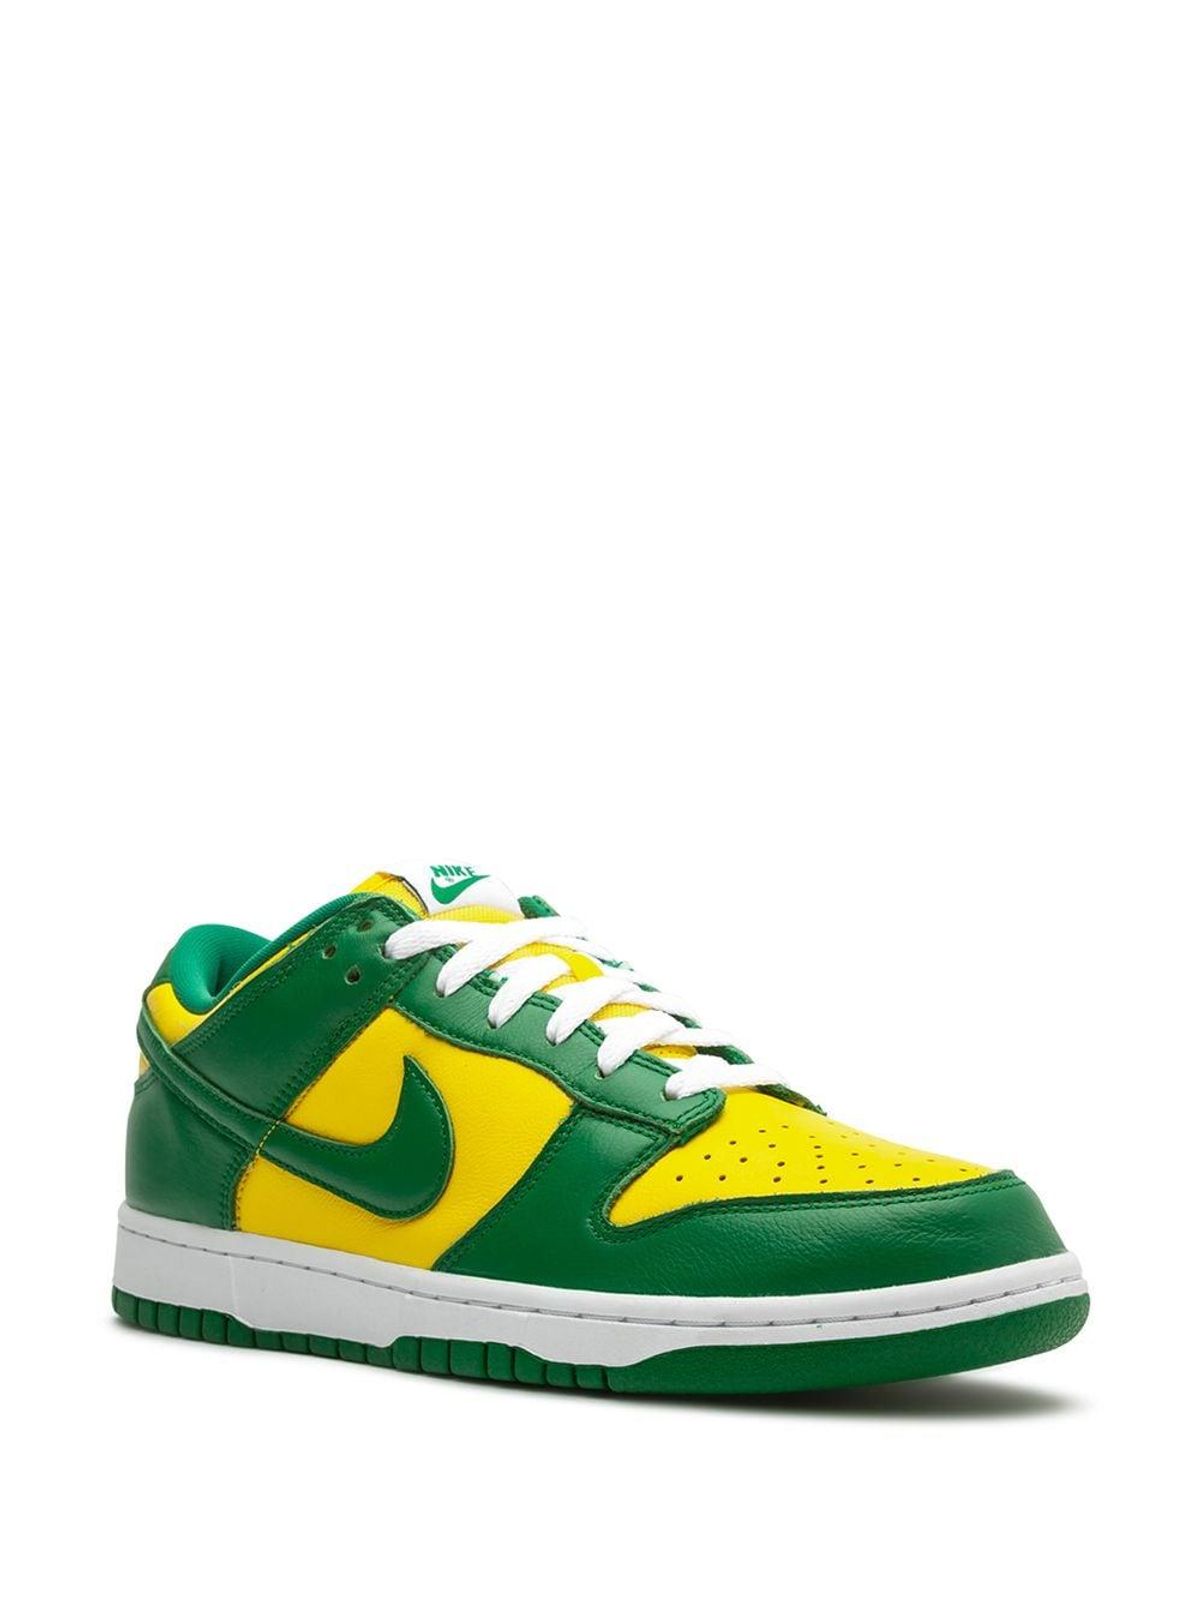 Dunk Low "Brazil" sneakers